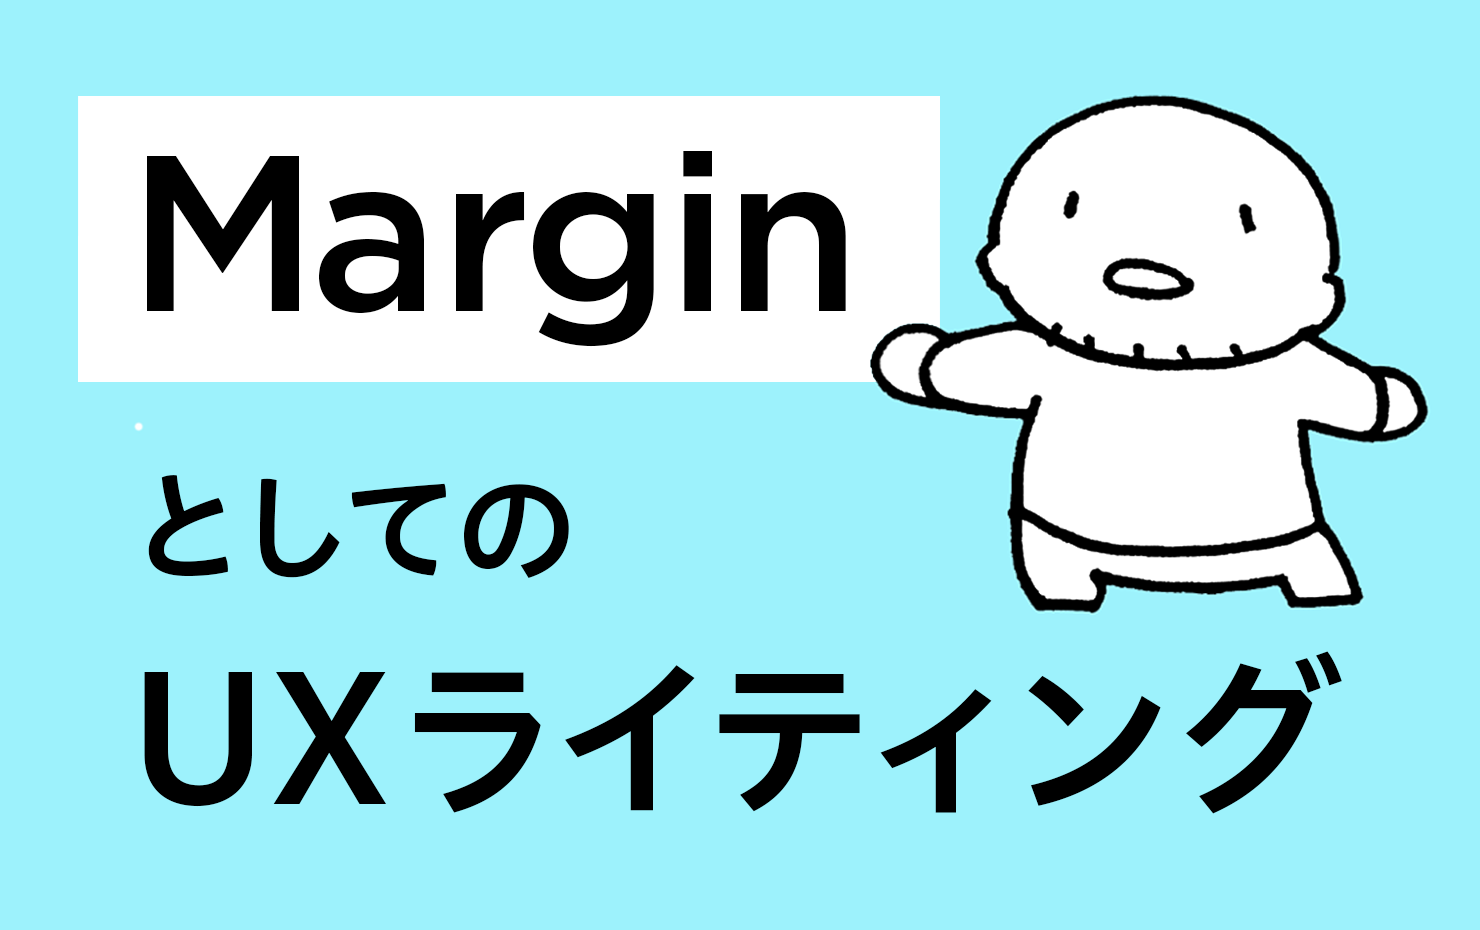 記事タイトル「MarginとしてのUXライティング」の文字と、デフォルメされた人のイラスト